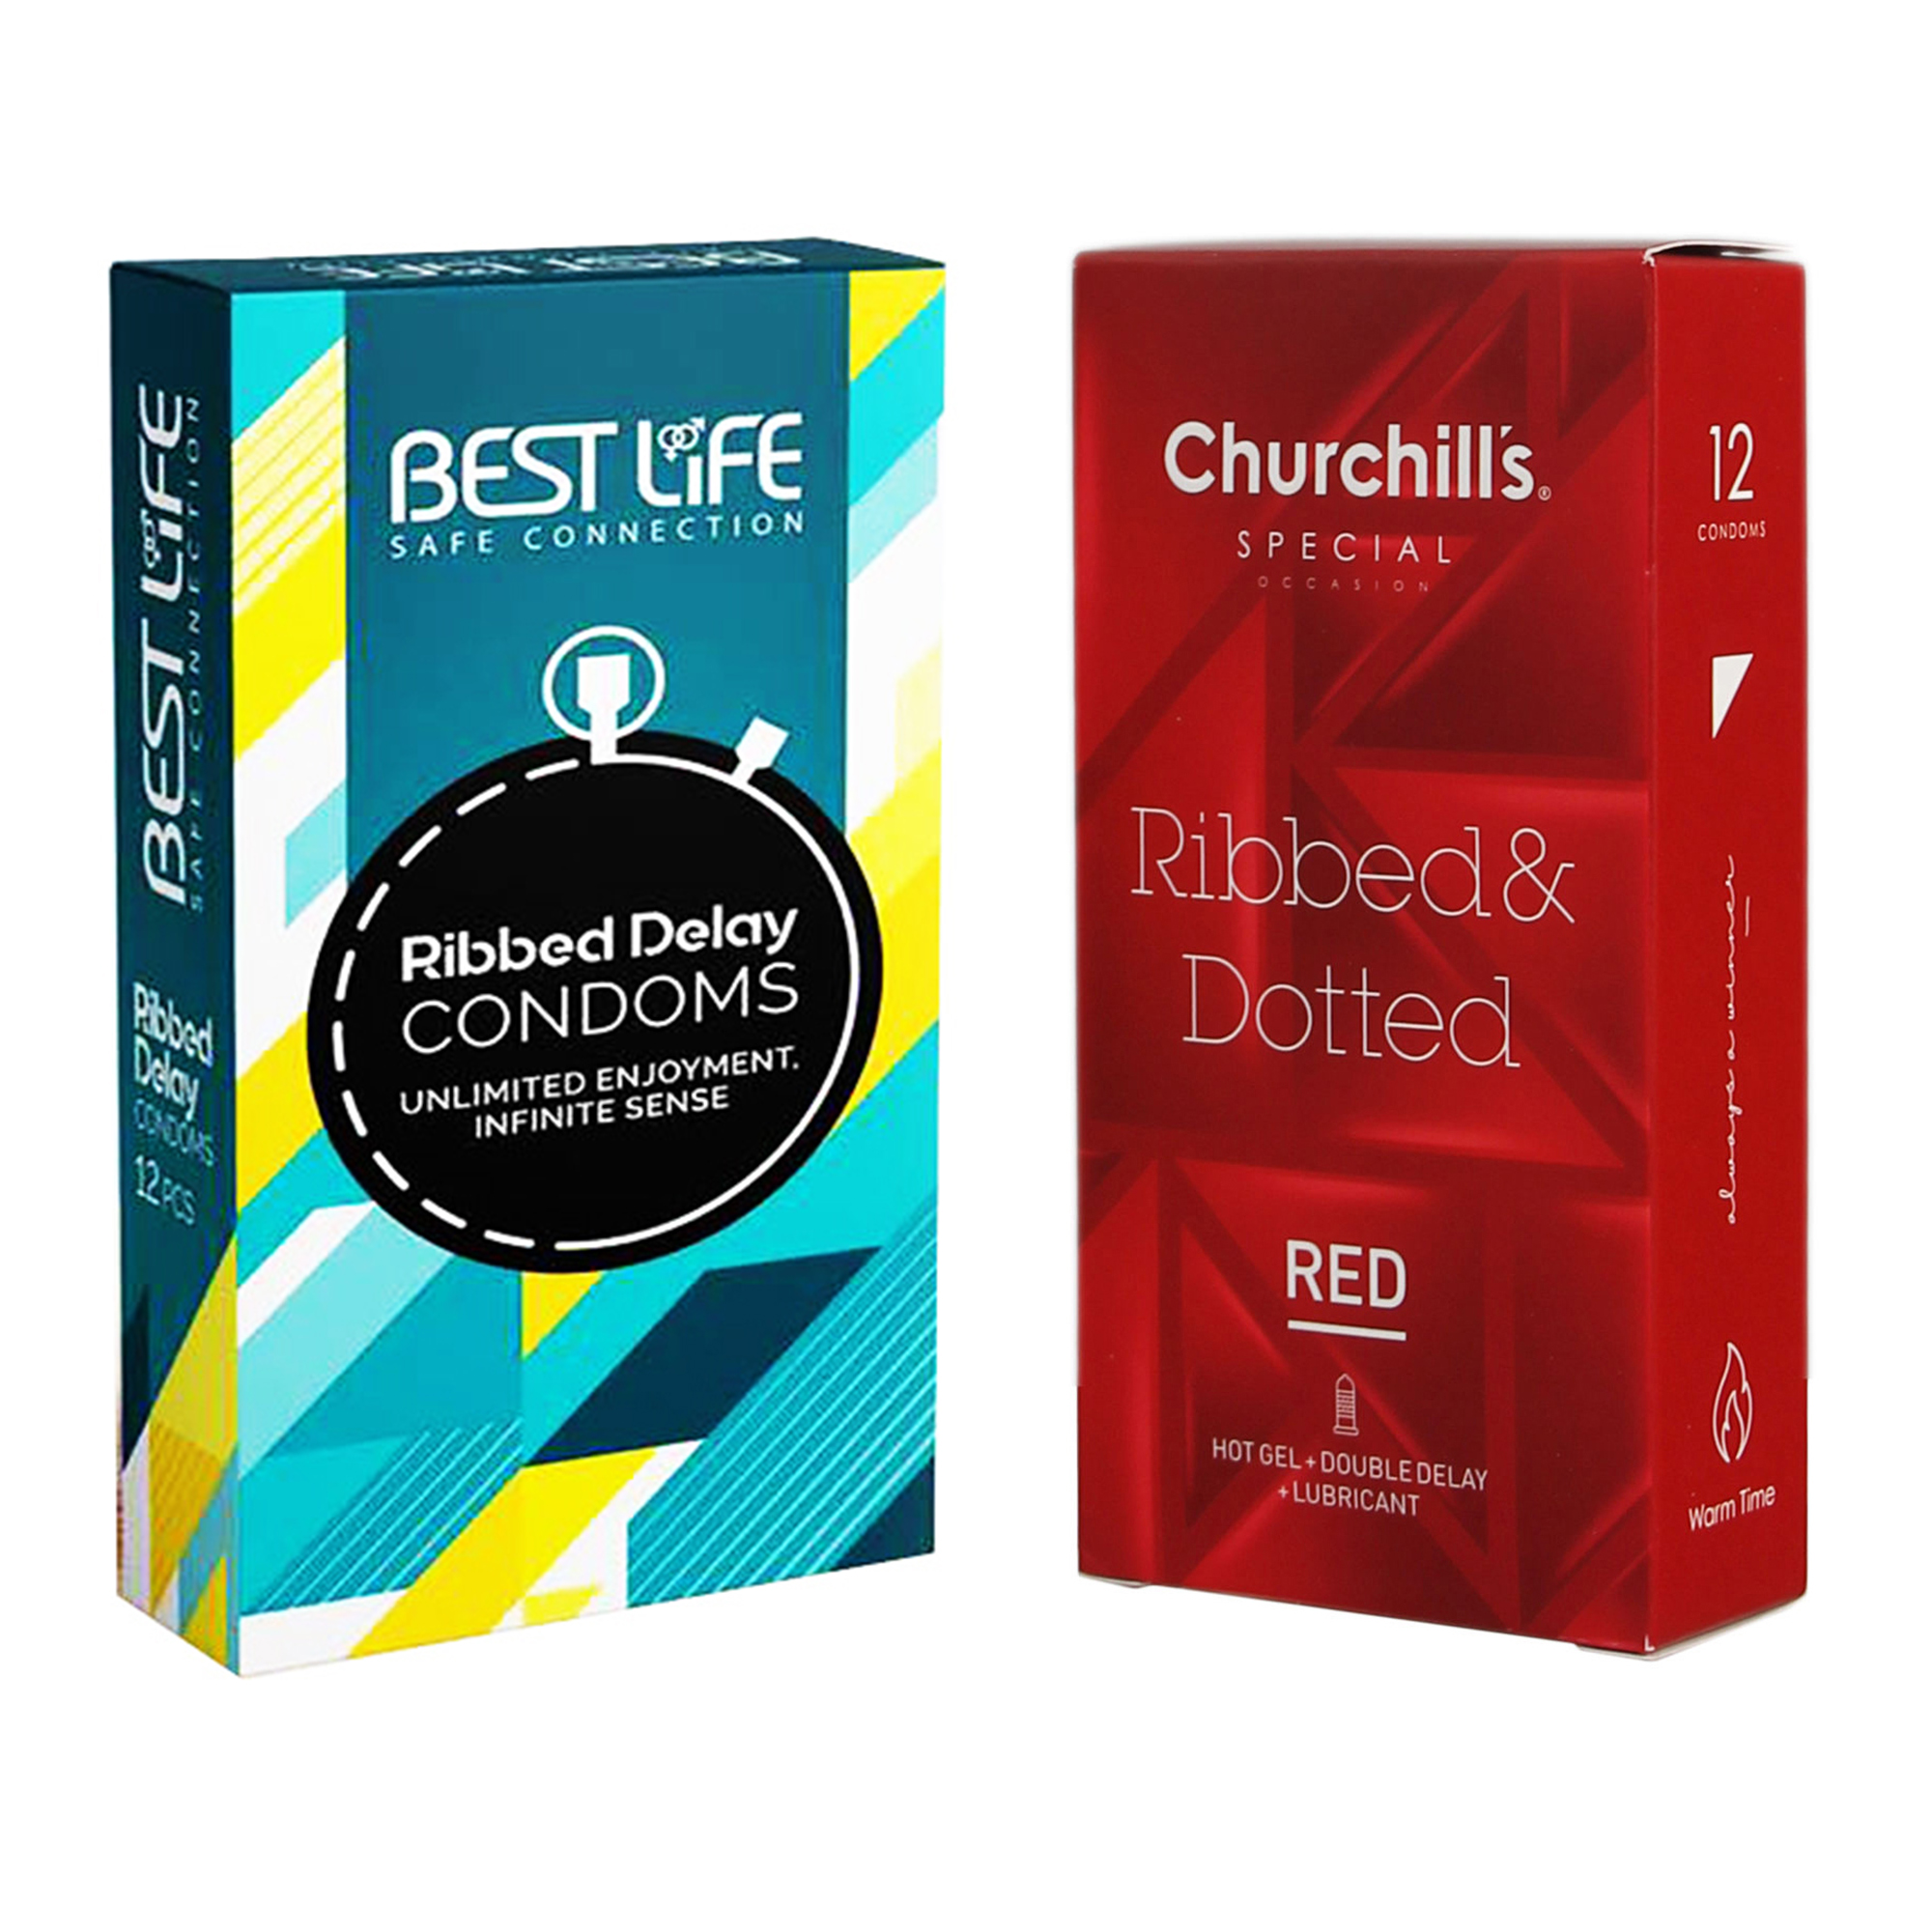 کاندوم چرچیلز مدل Ribbed & Dotted Red بسته 12 عددی به همراه کاندوم بست لایف مدل Ribbed Delay بسته 12 عددی